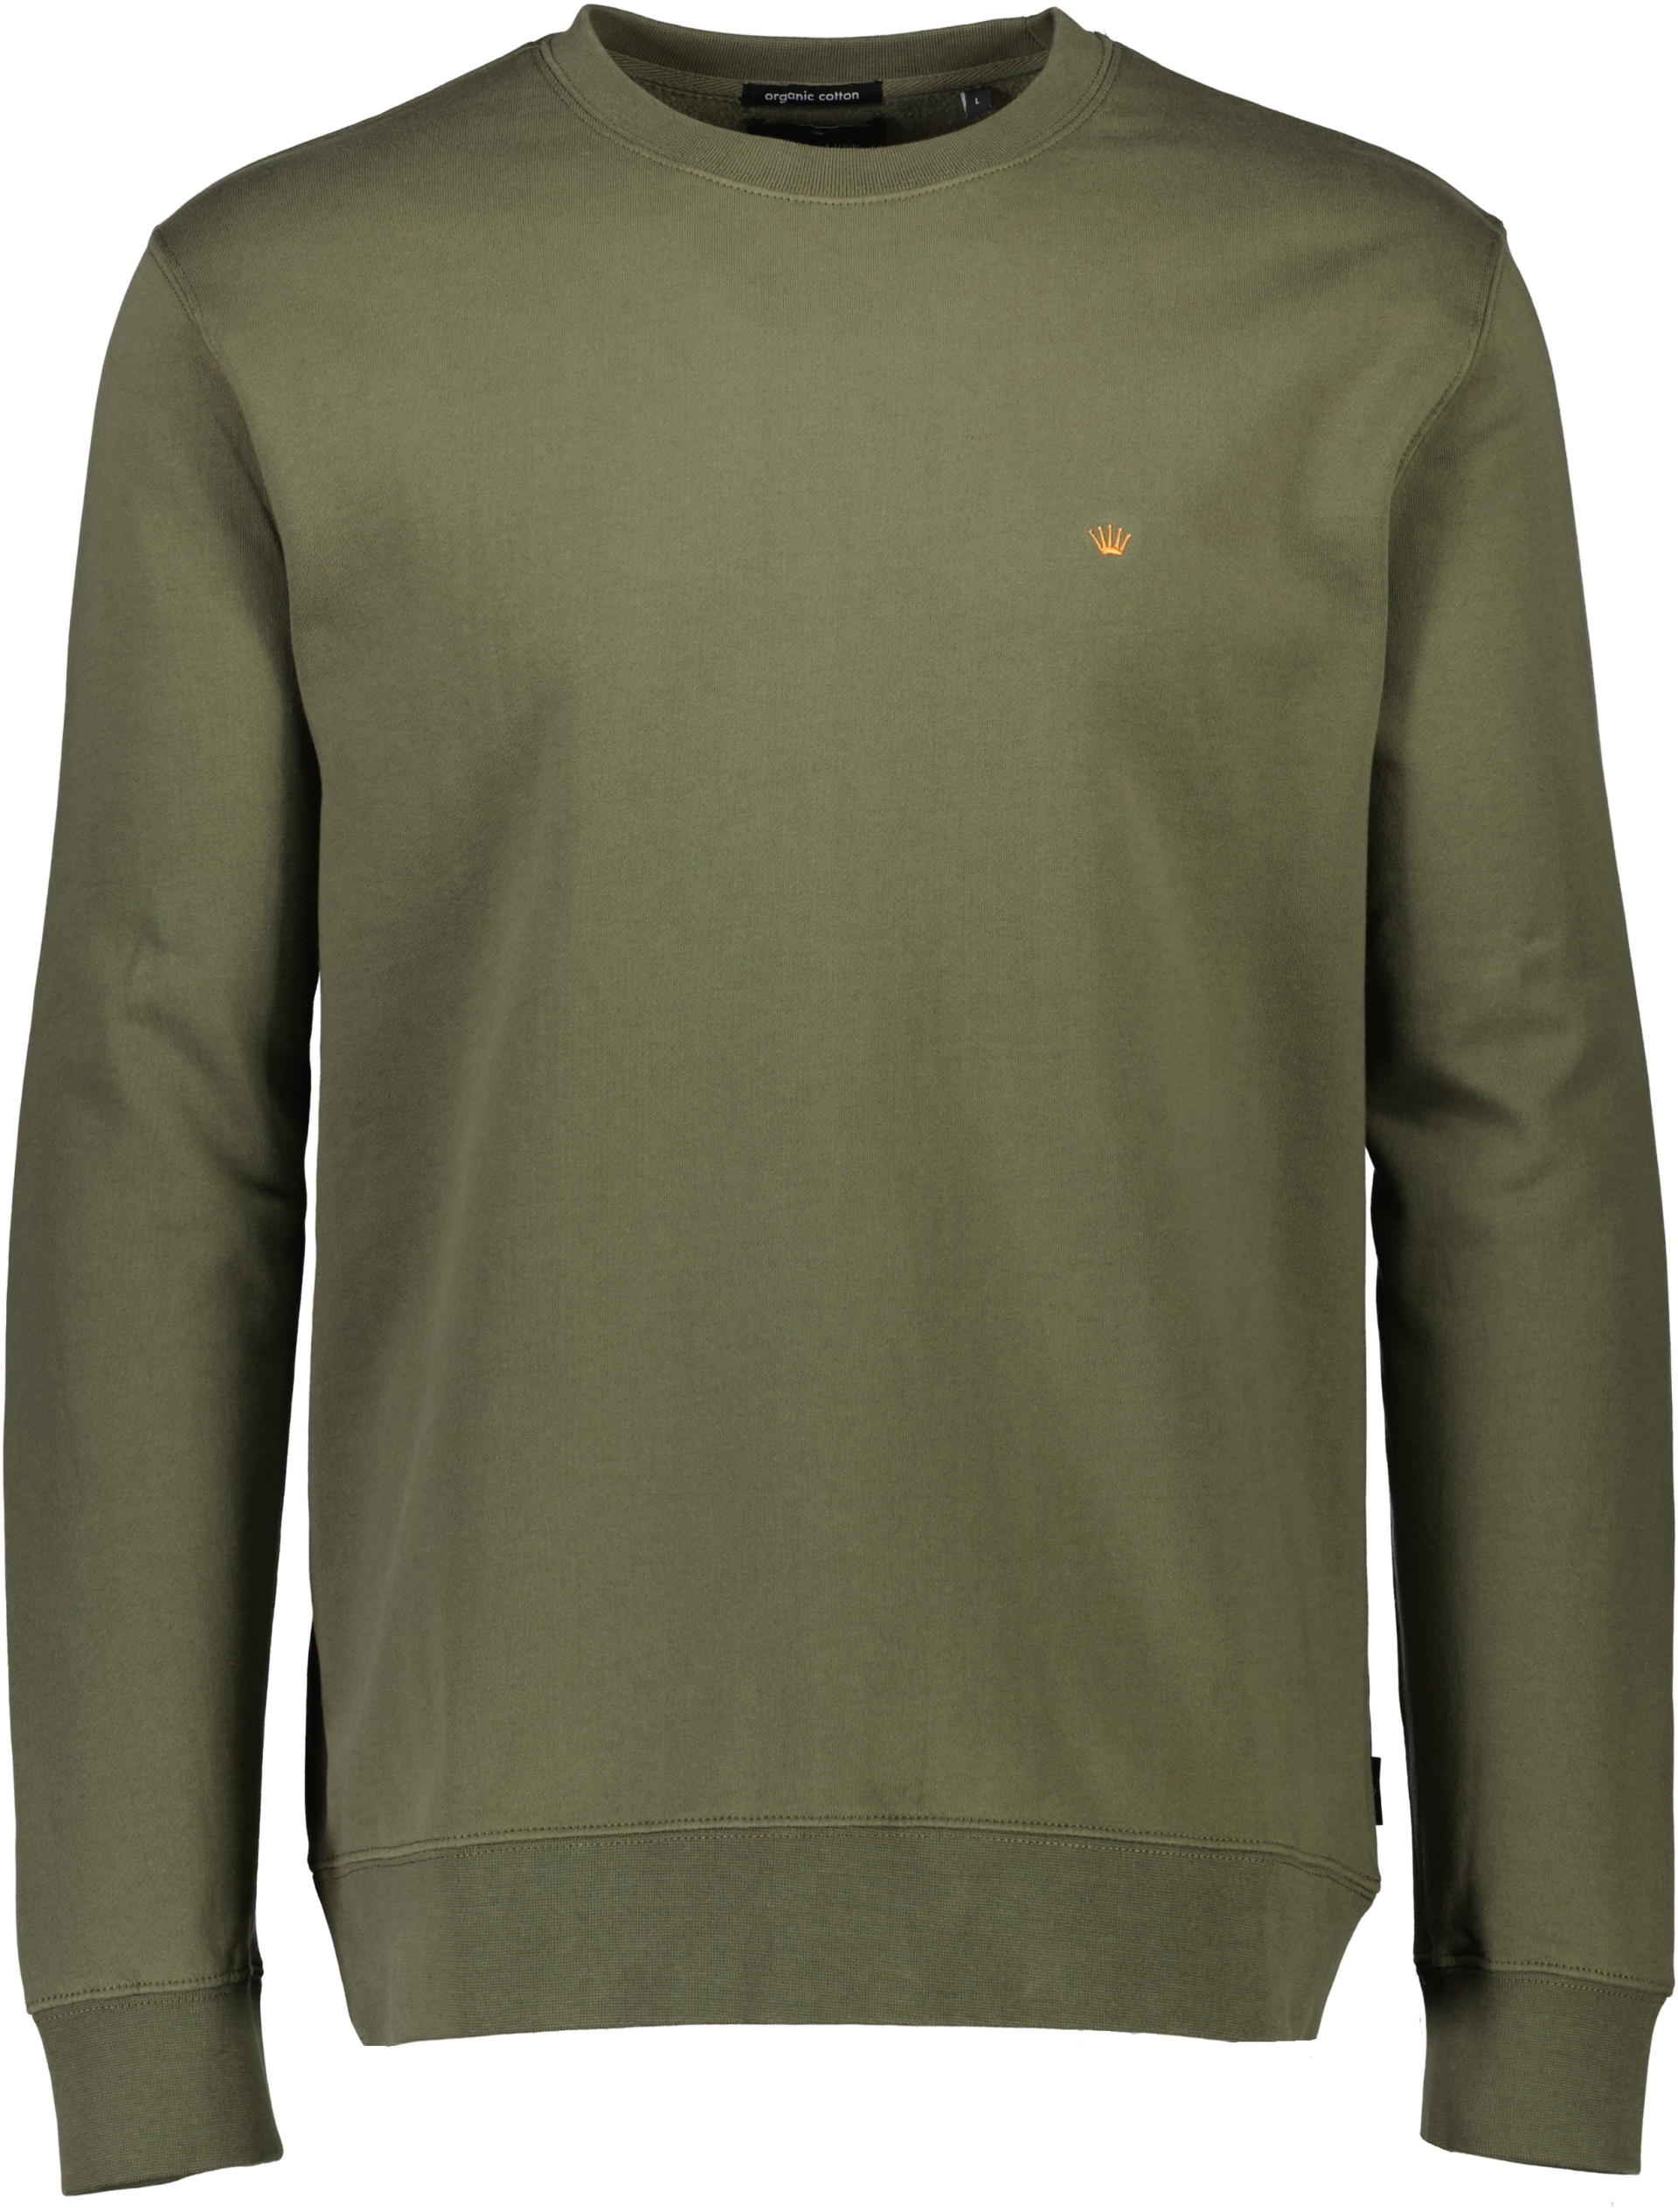 Junk de Luxe Sweatshirt grön / army